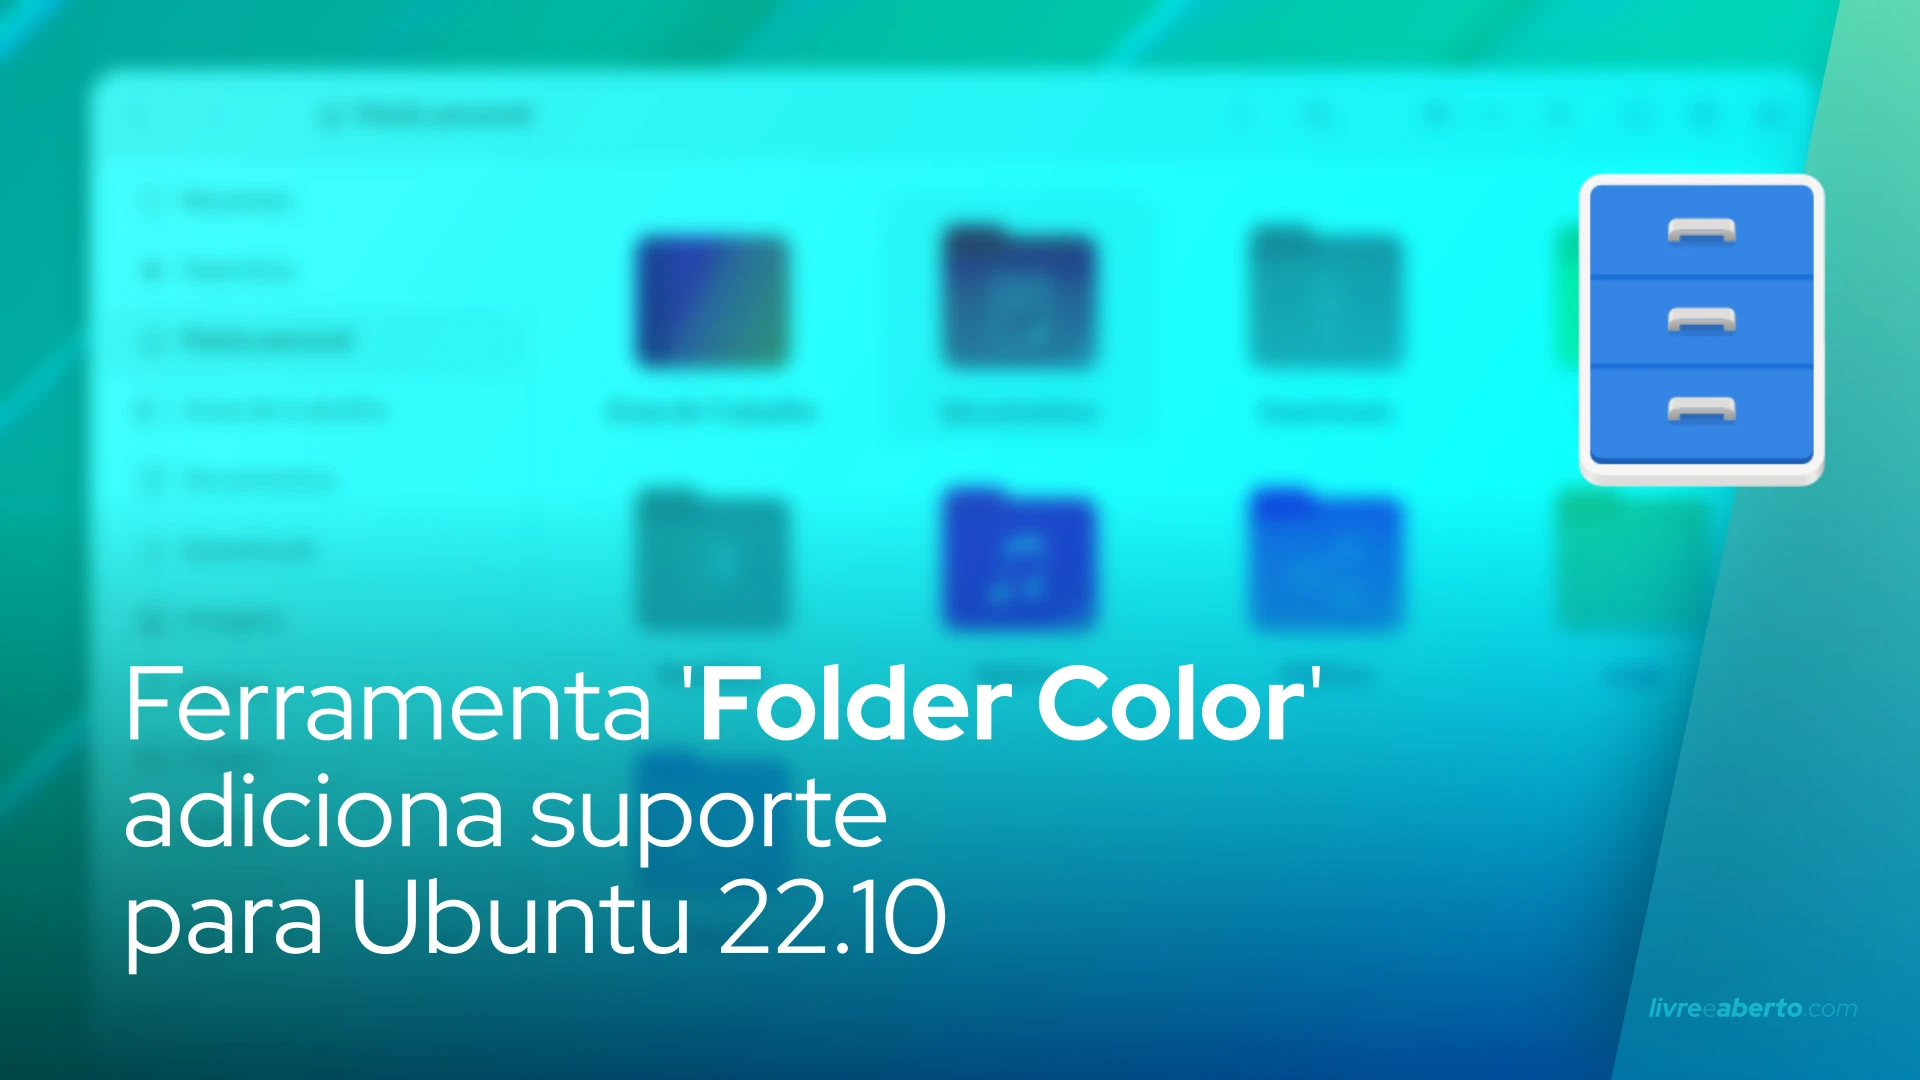 Ferramenta 'Folder Color' adiciona suporte para Ubuntu 22.10